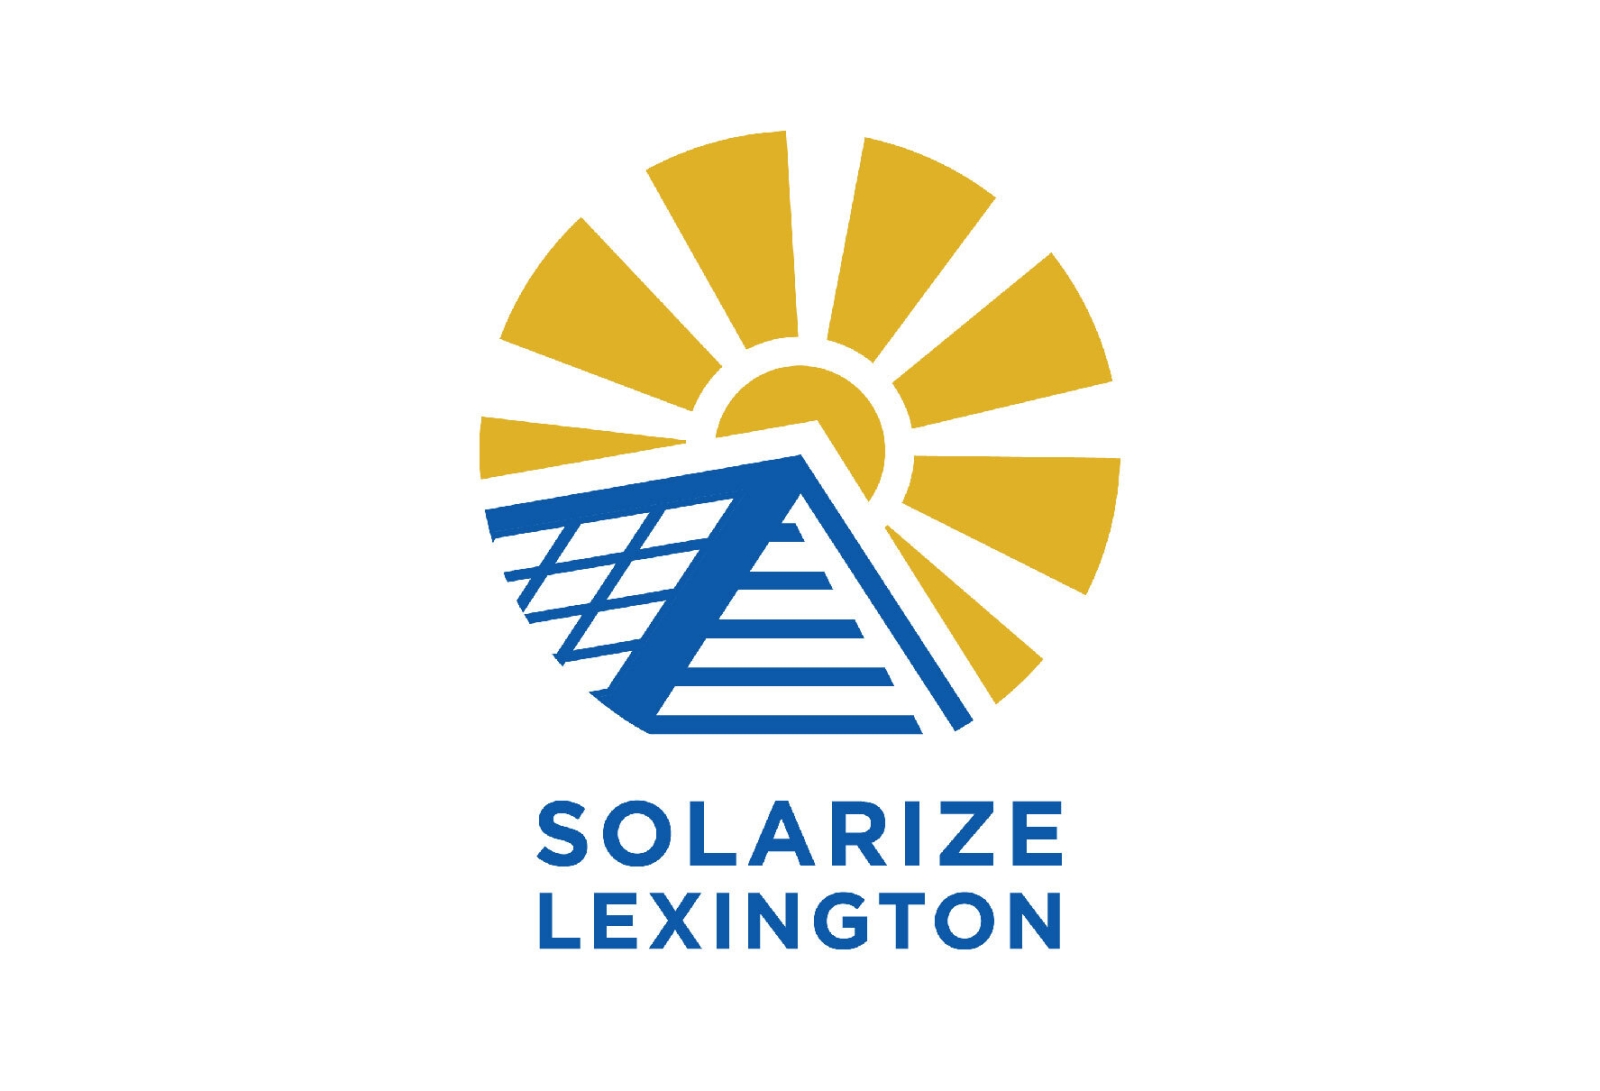 Solarize Lexington logo depicting sun and a solar panel, with text reading, "Solarize Lexington"